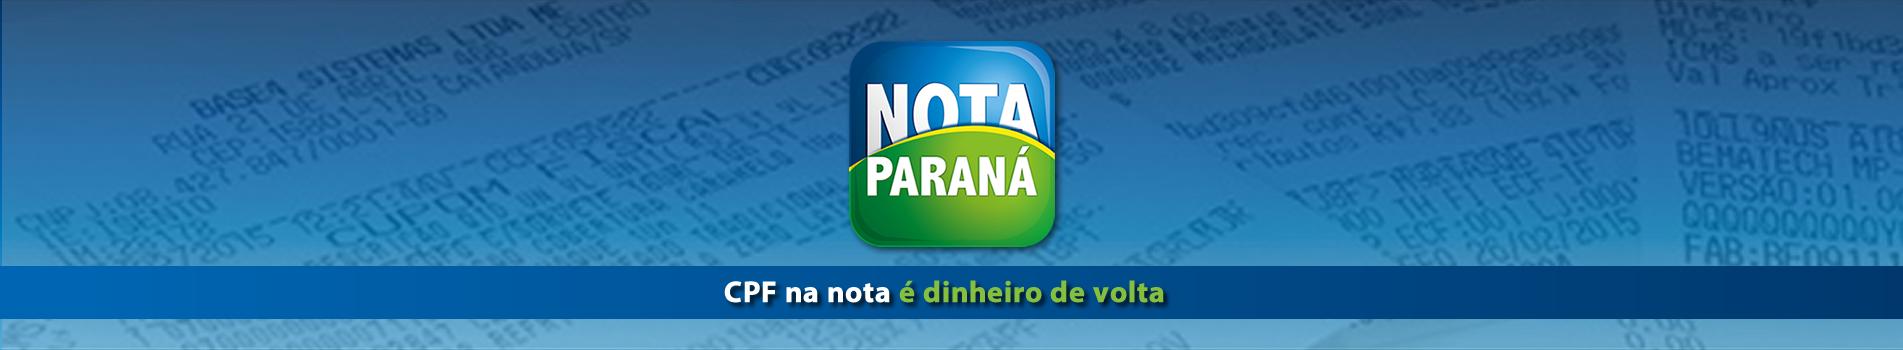 Nota Paraná - CPF na nota é dinheiro de volta